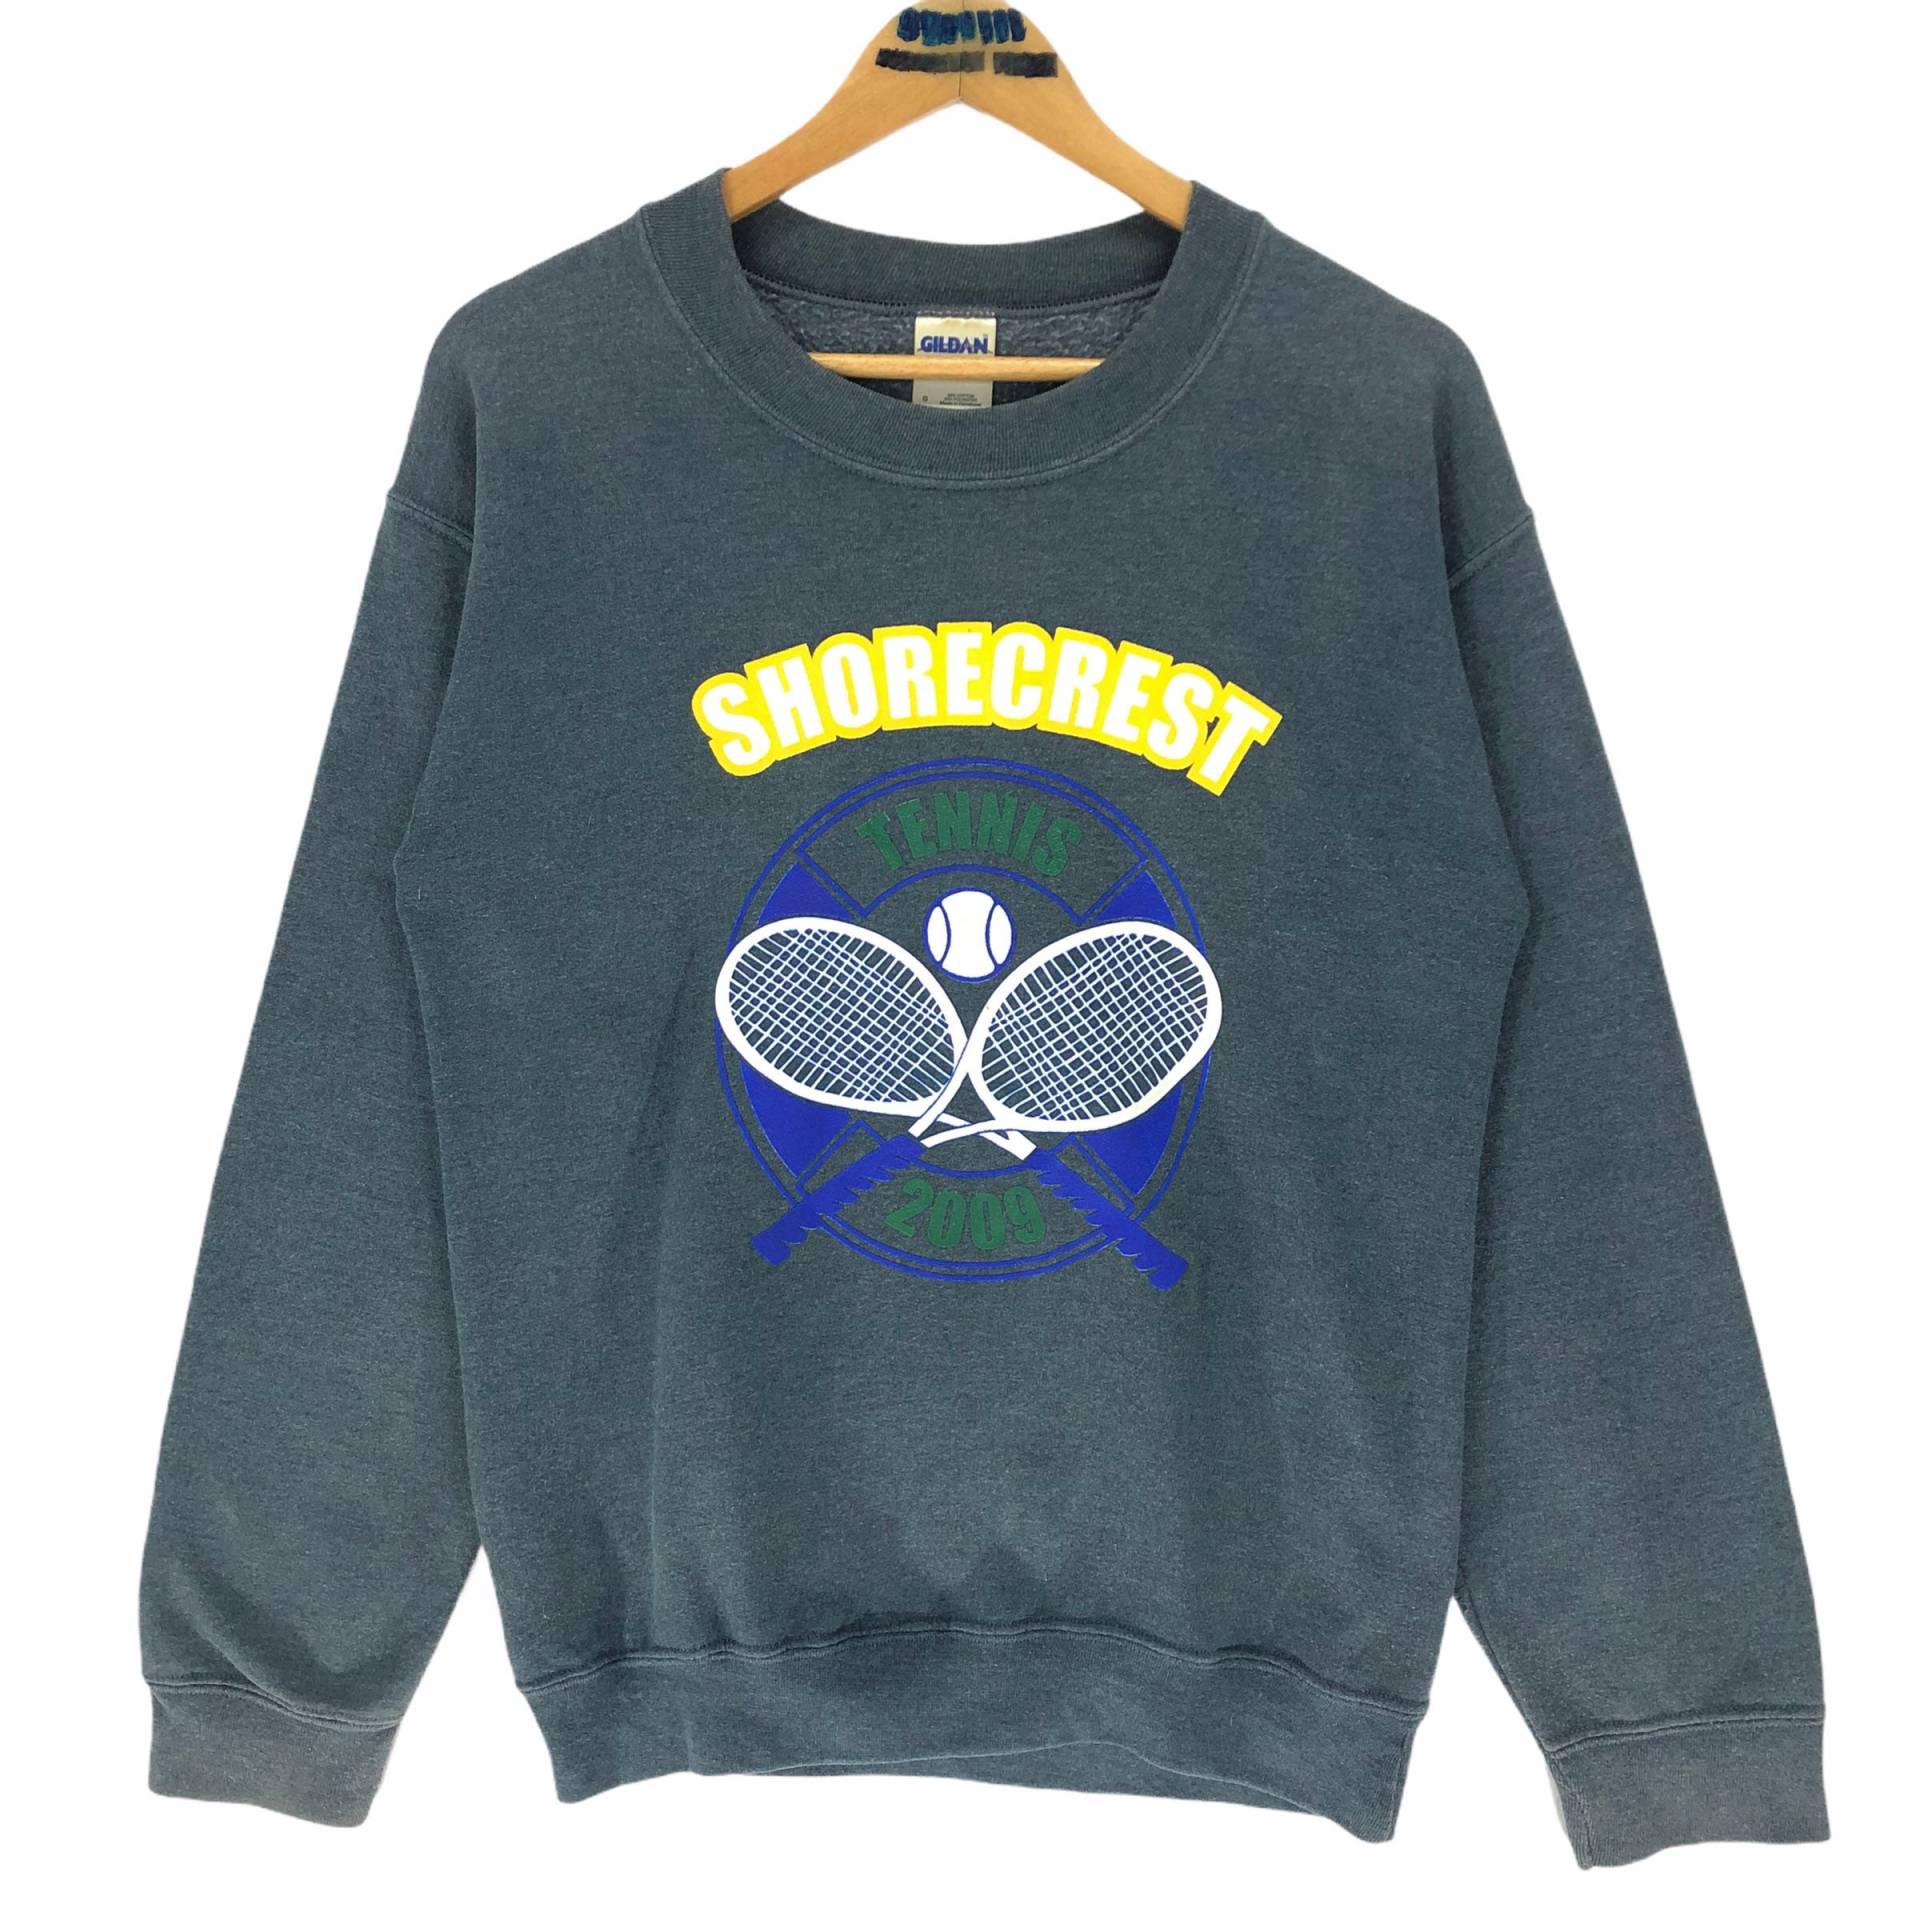 Vintage Shorecrest High School Tennis Crewneck Sweatshirt Pullover Big Logo Collegiate Ncaa Gildan Größe S von stuffofnatureandarts